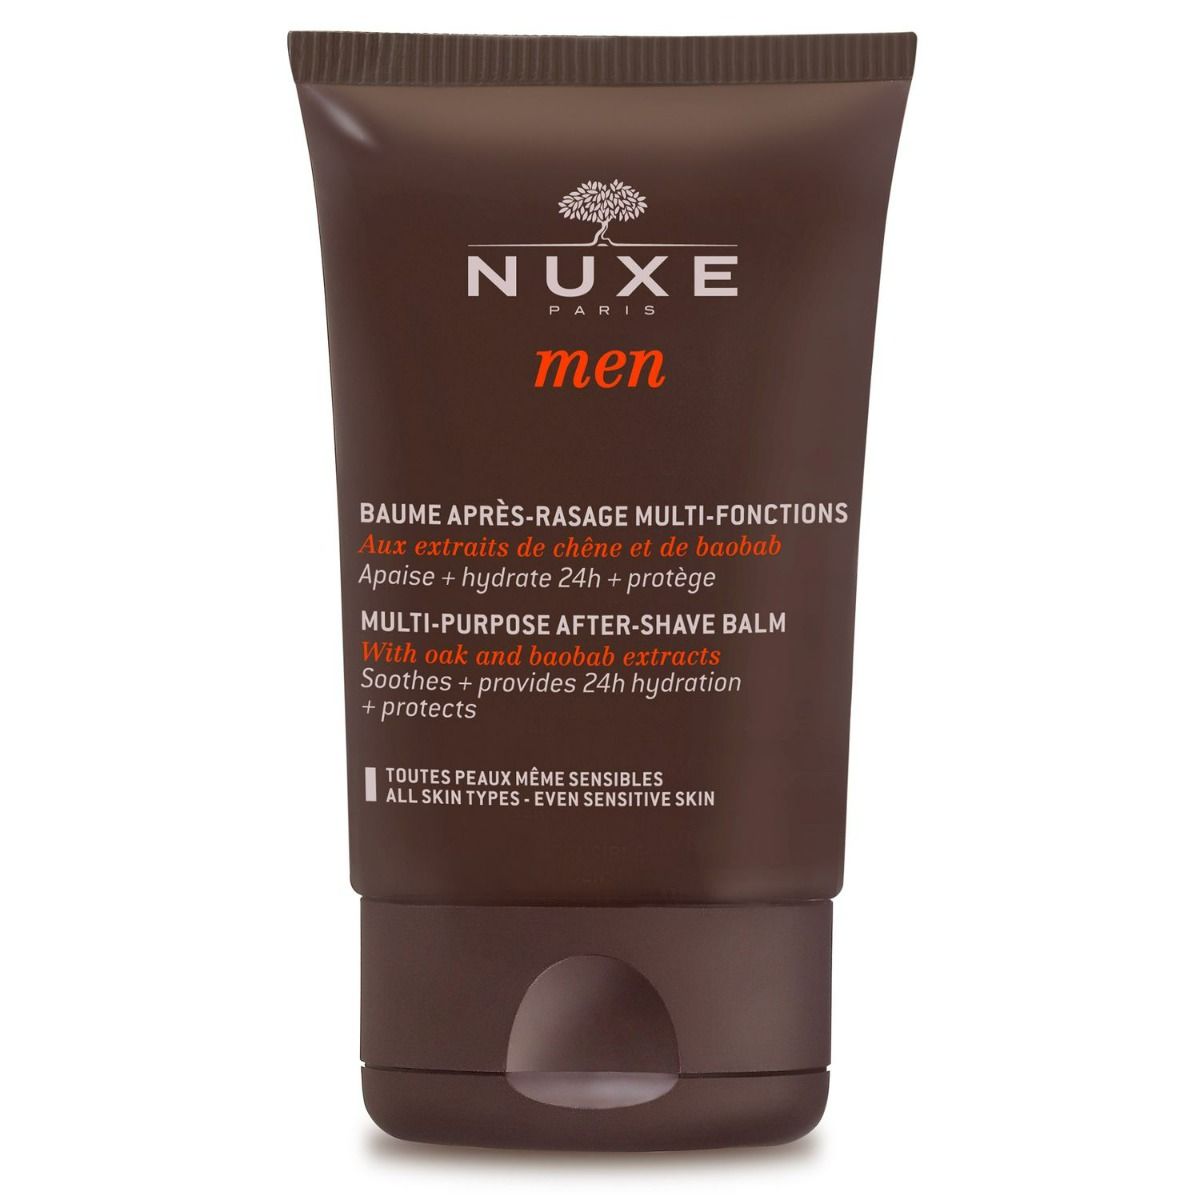 Nuxe Men Baume Après-Rasage бальзам после бритья, 50 ml бальзам после бритья nuxe men bálsamo multifunciones para después del afeitado nuxe 50 мл